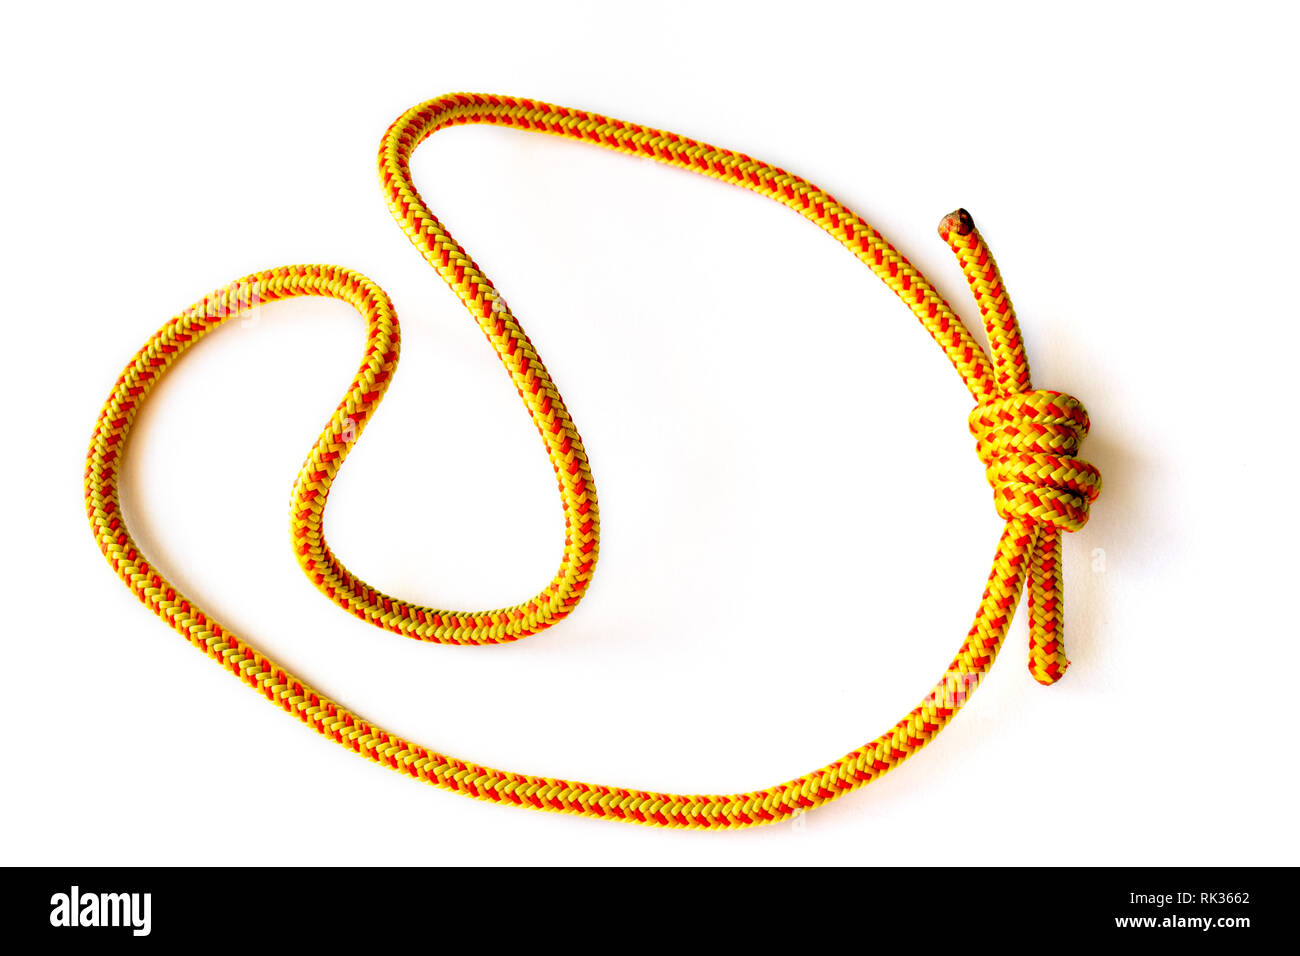 Ein prusik Loop (Cord) auf 5 mm Seil, geschlossen mit einem doppelten fisherman Knoten. Diese Schleife wird im Klettern, Canyoning, Klettern, Höhlenforschung, Seil rescu verwendet Stockfoto